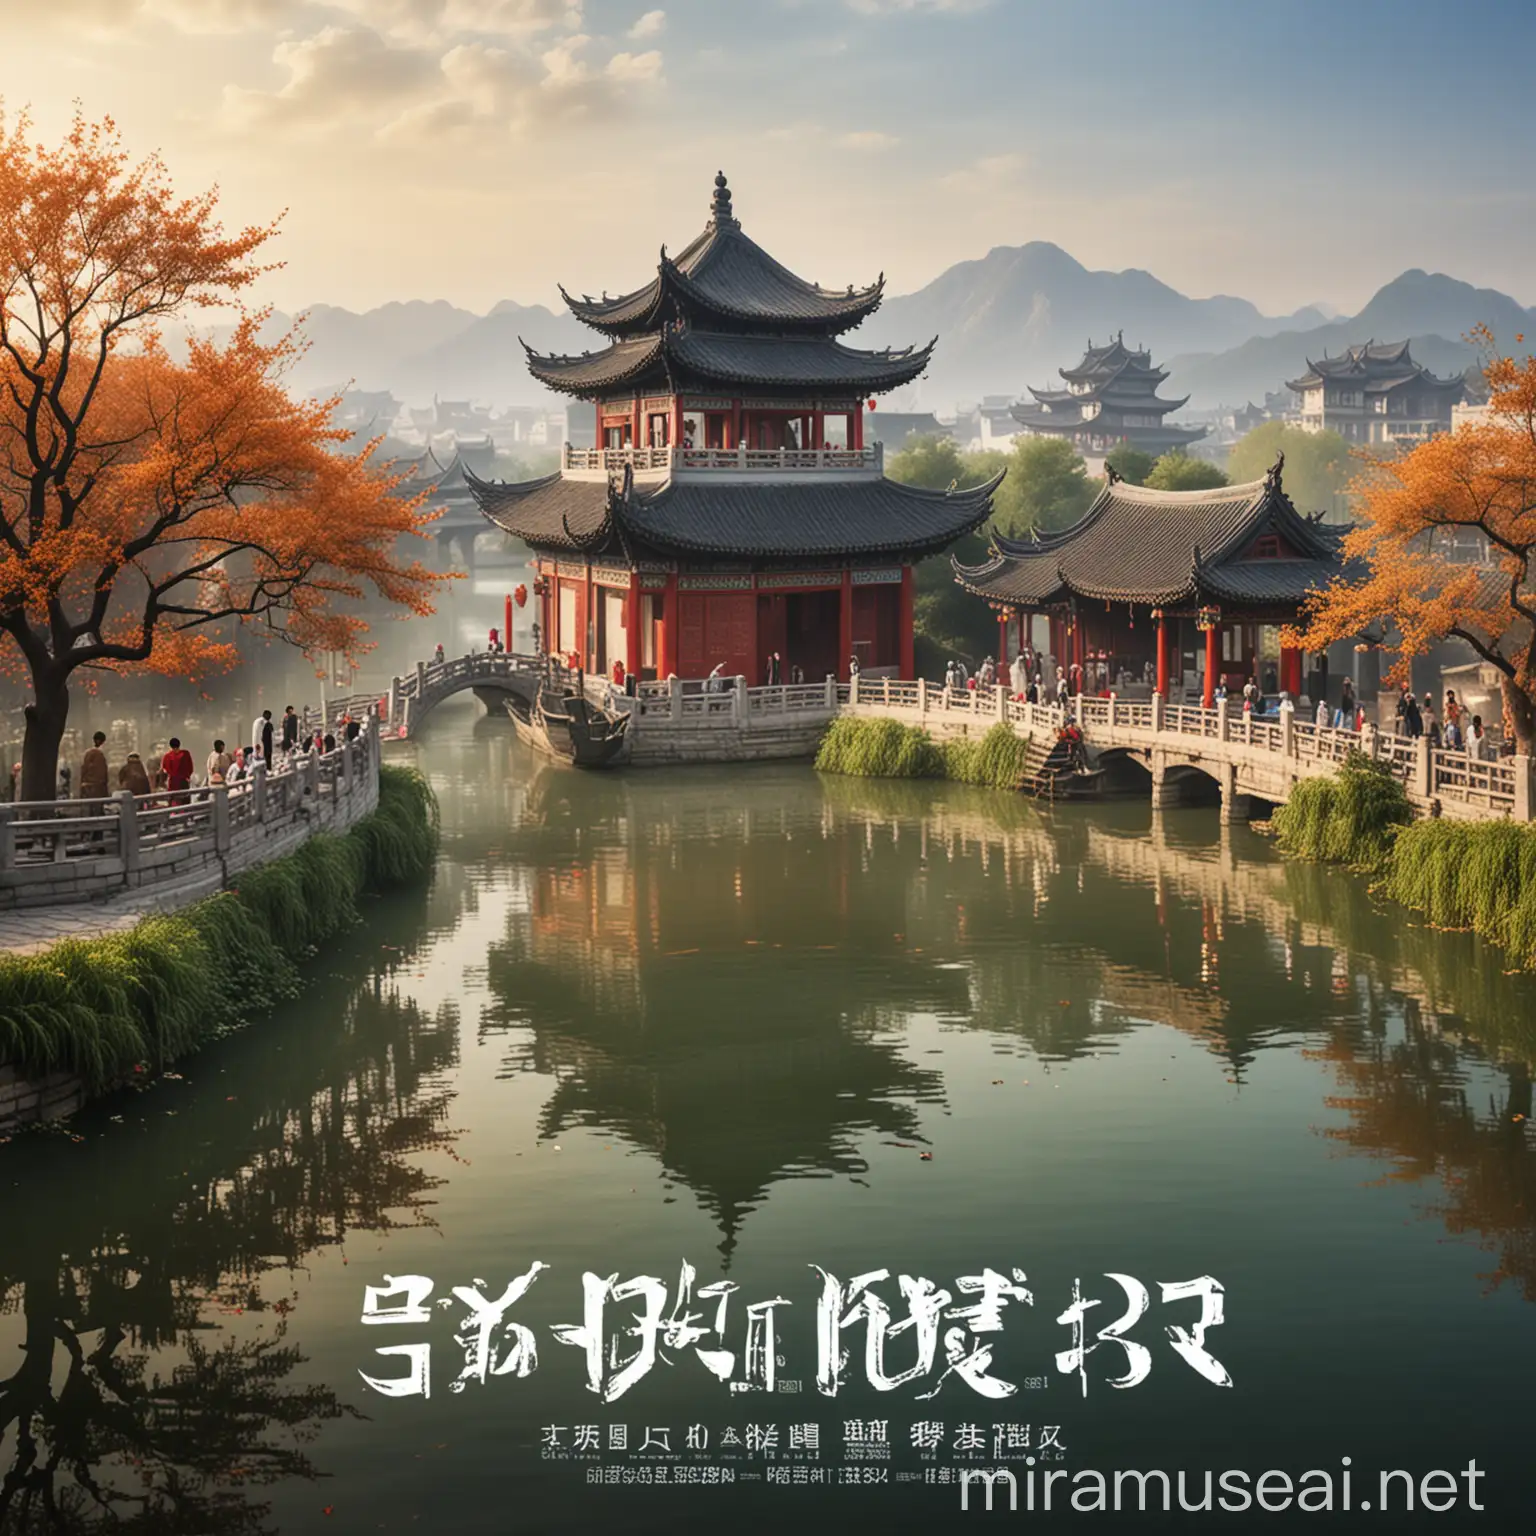 生成扬州的旅游形象宣传海报
